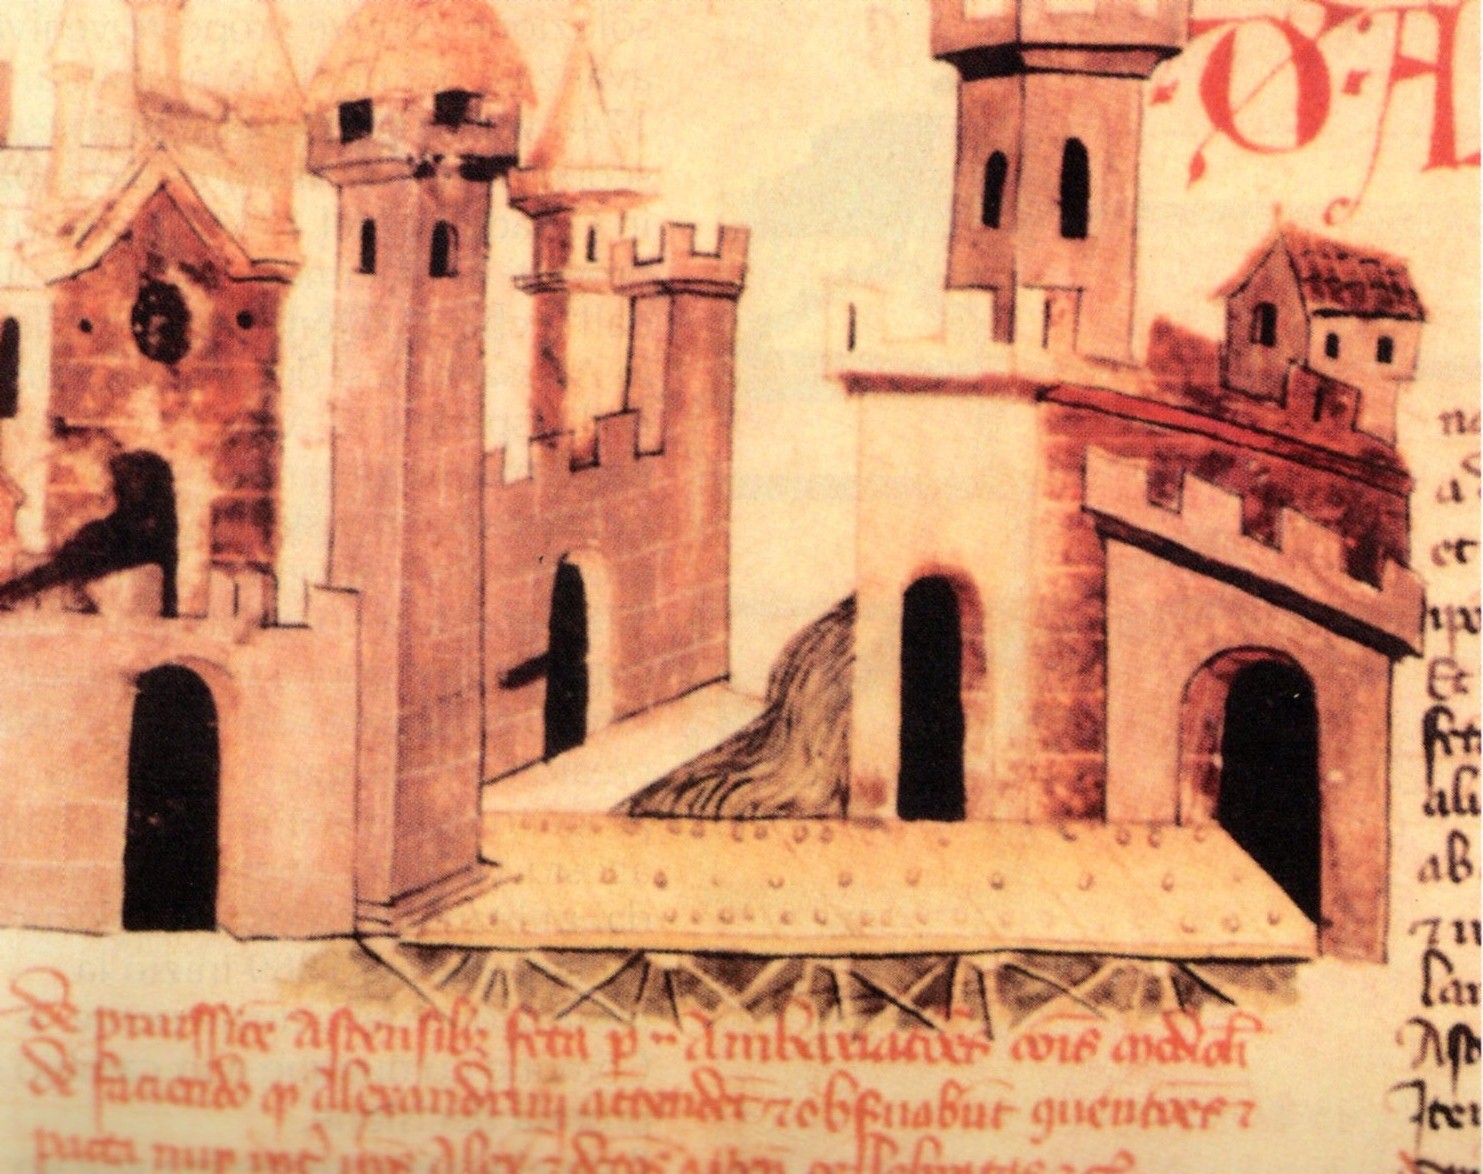 il ponte di legno, sec. XIII, "Codex Astensis"